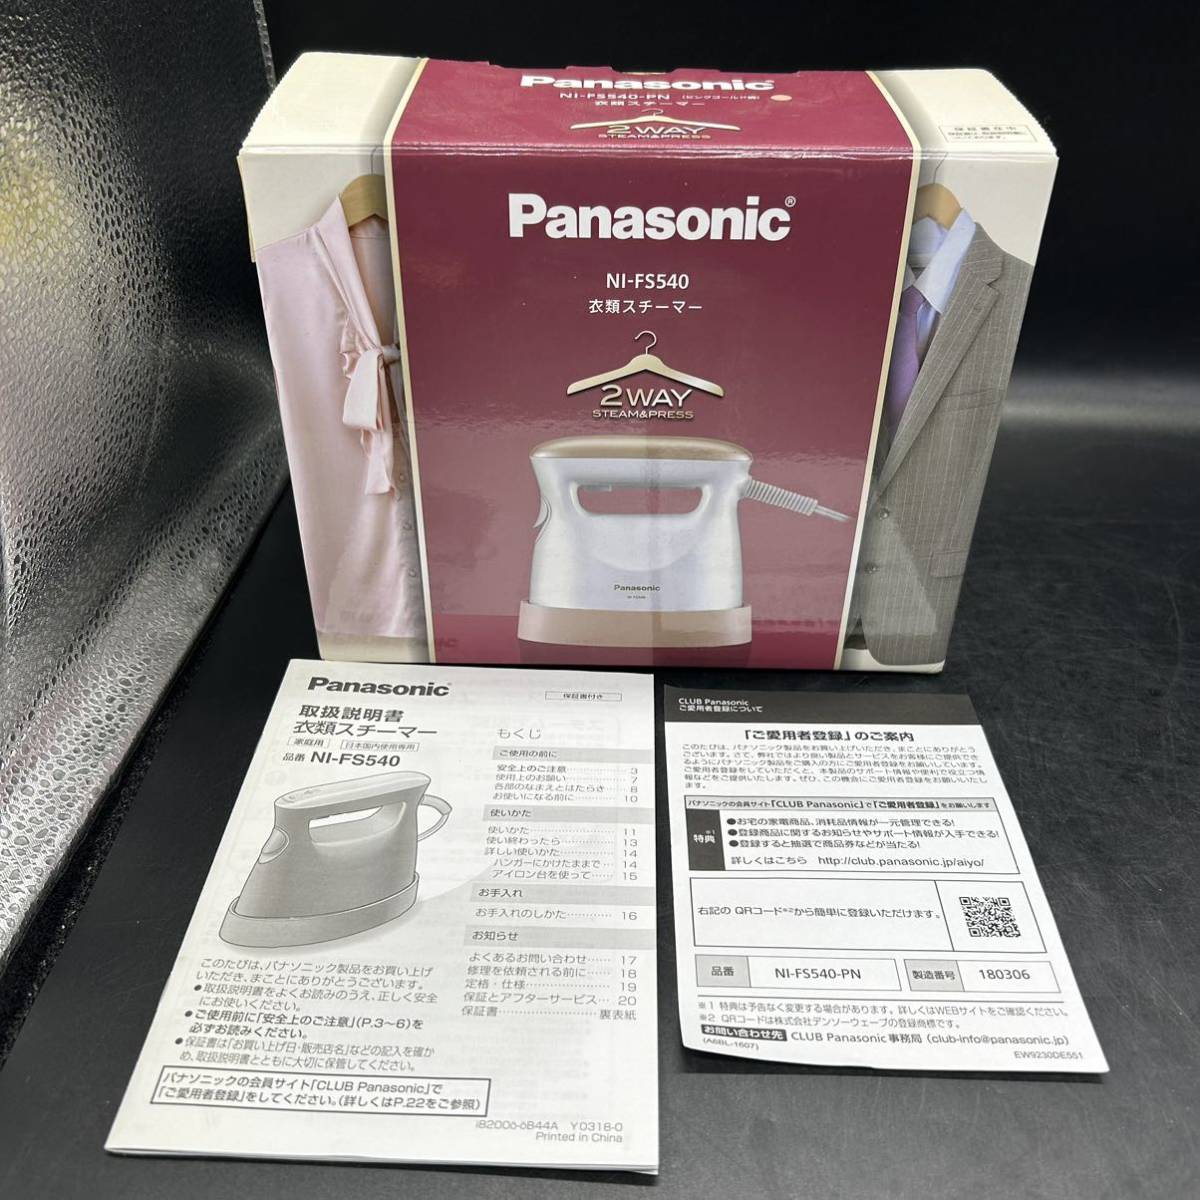 Panasonic パナソニック 衣類スチーマー アイロン NI-FS540-PN ピンクゴールド調  動作確認濟み L8の画像2